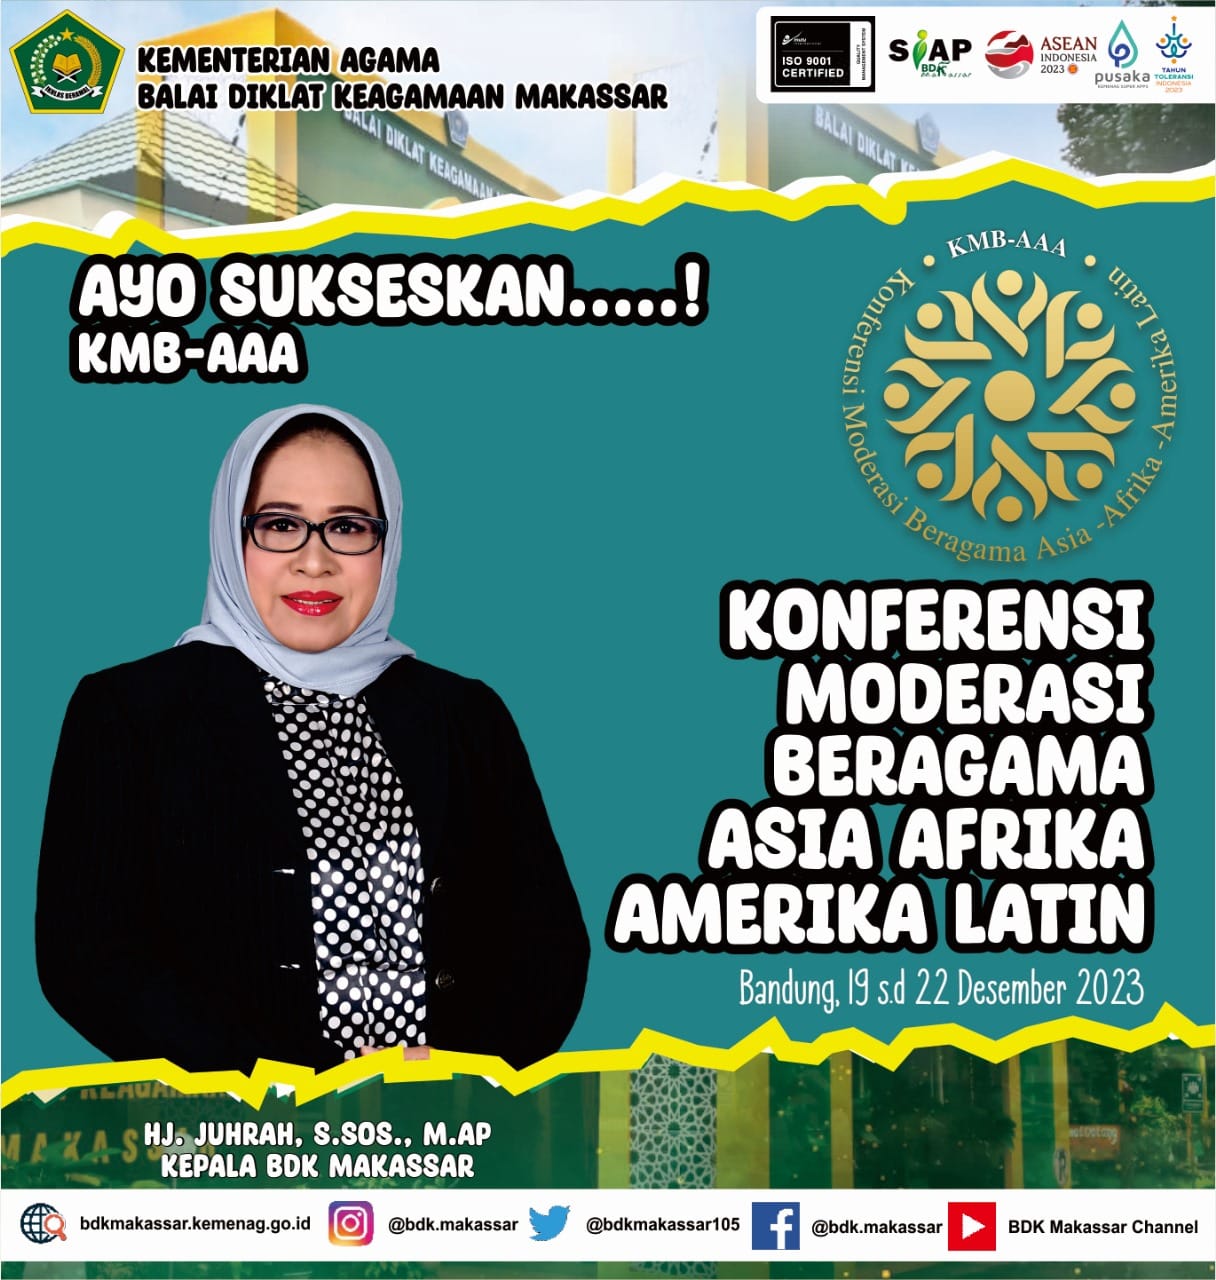 BDK Makassar mendukung Pelaksanaan Konferensi Moderasi Beragama Asia Afrika Amerika Latin (KMBAAL) di Bandung